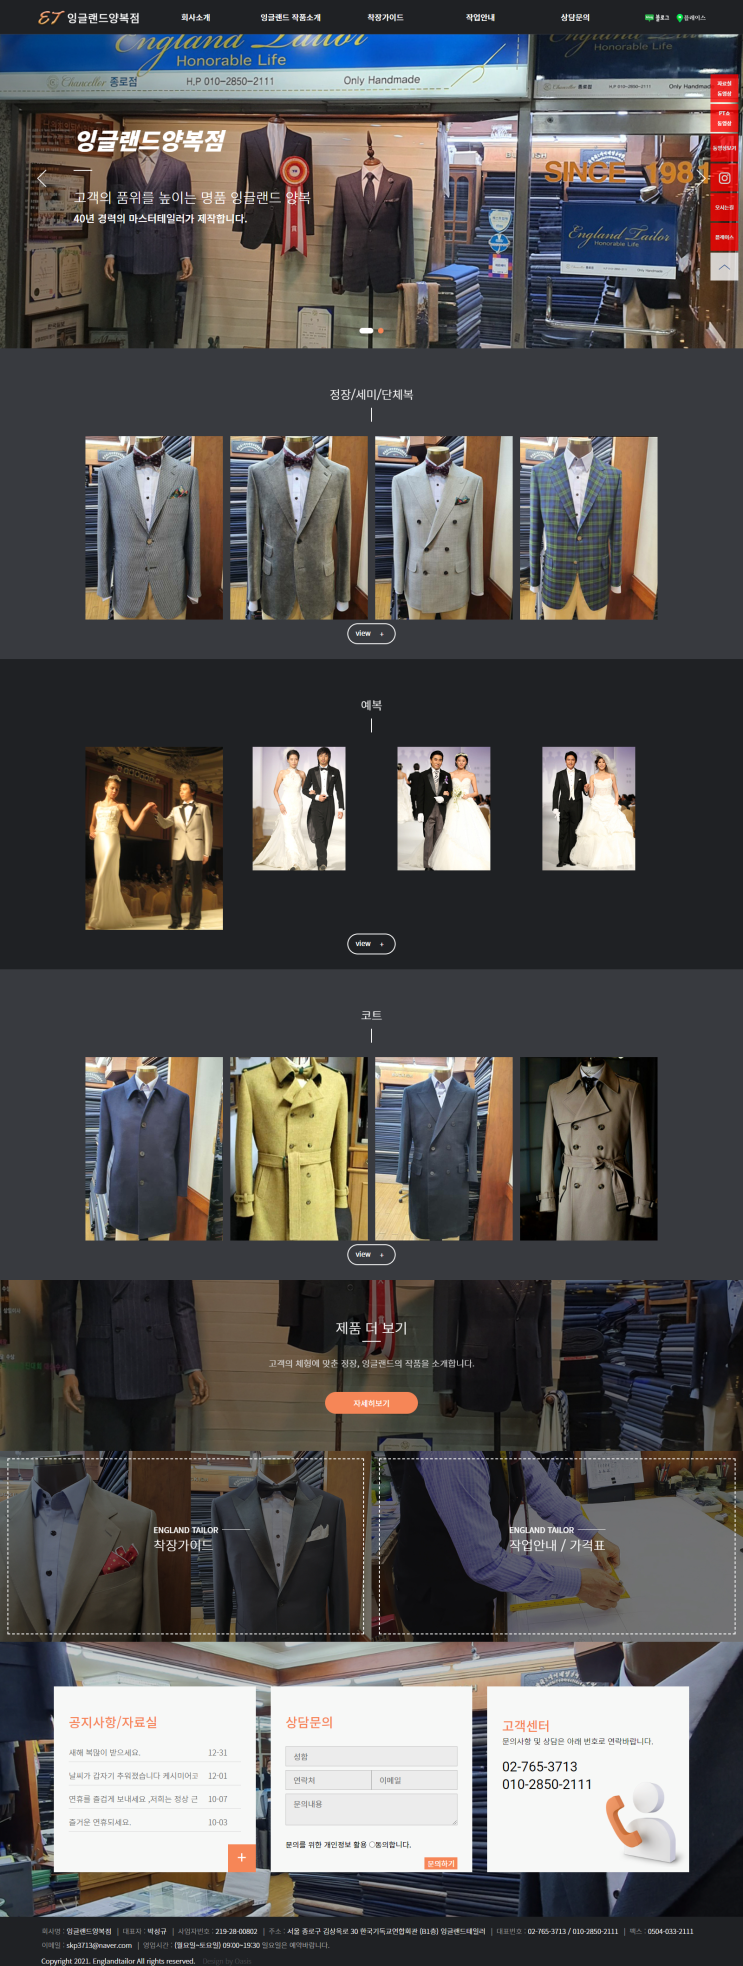 [ 맞춤 양복 홈페이지 제작 ]_맞춤정장, 양복, 잉글랜드양복점 홈페이지제작.